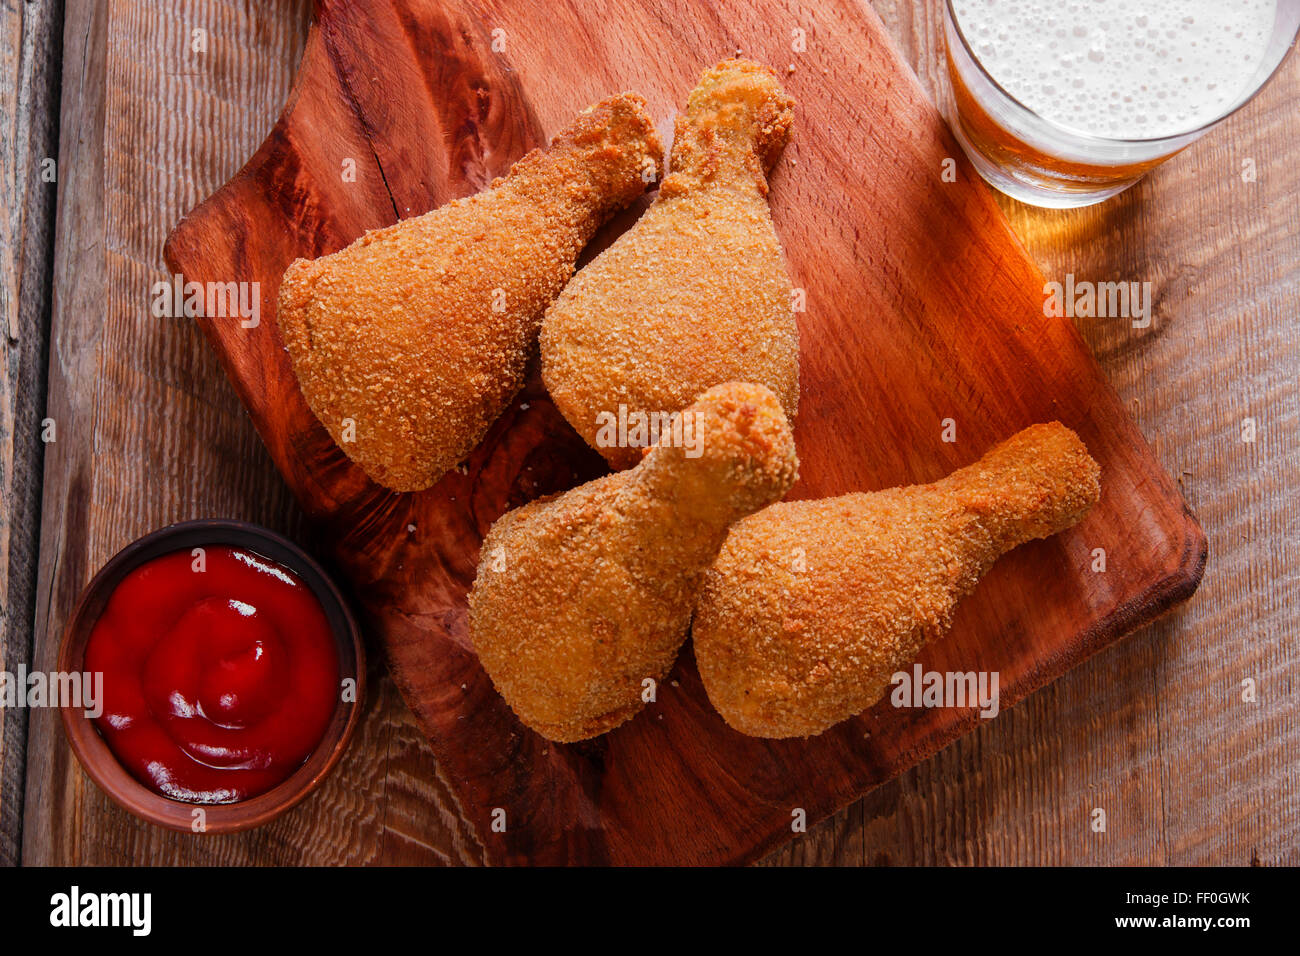 fried chicken leg in breadcrumbs Stock Photo